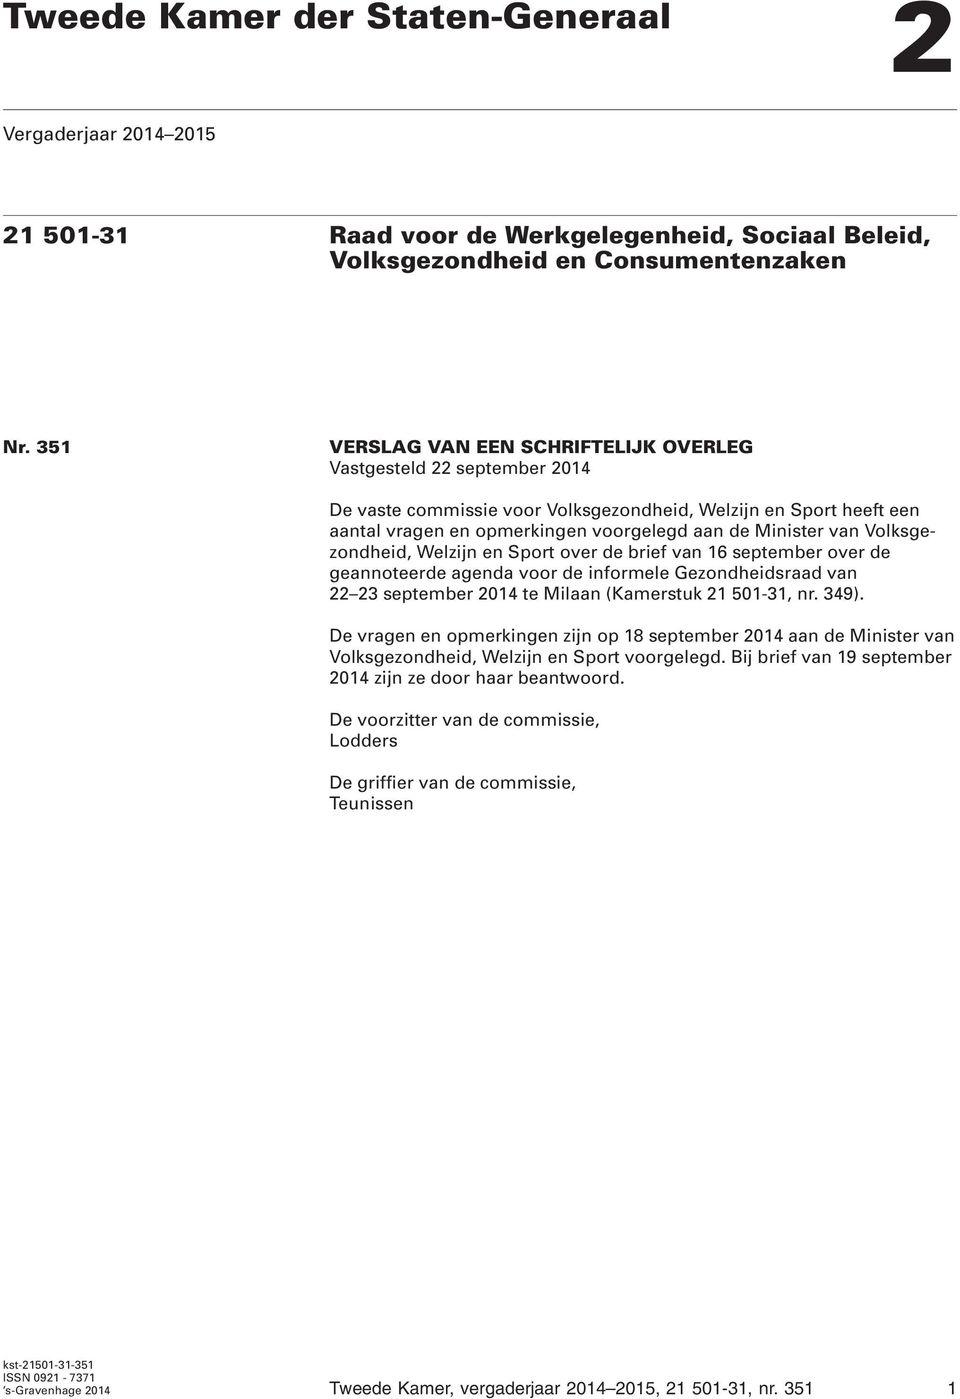 Volksgezondheid, Welzijn en Sport over de brief van 16 september over de geannoteerde agenda voor de informele Gezondheidsraad van 22 23 september 2014 te Milaan (Kamerstuk 21 501-31, nr. 349).